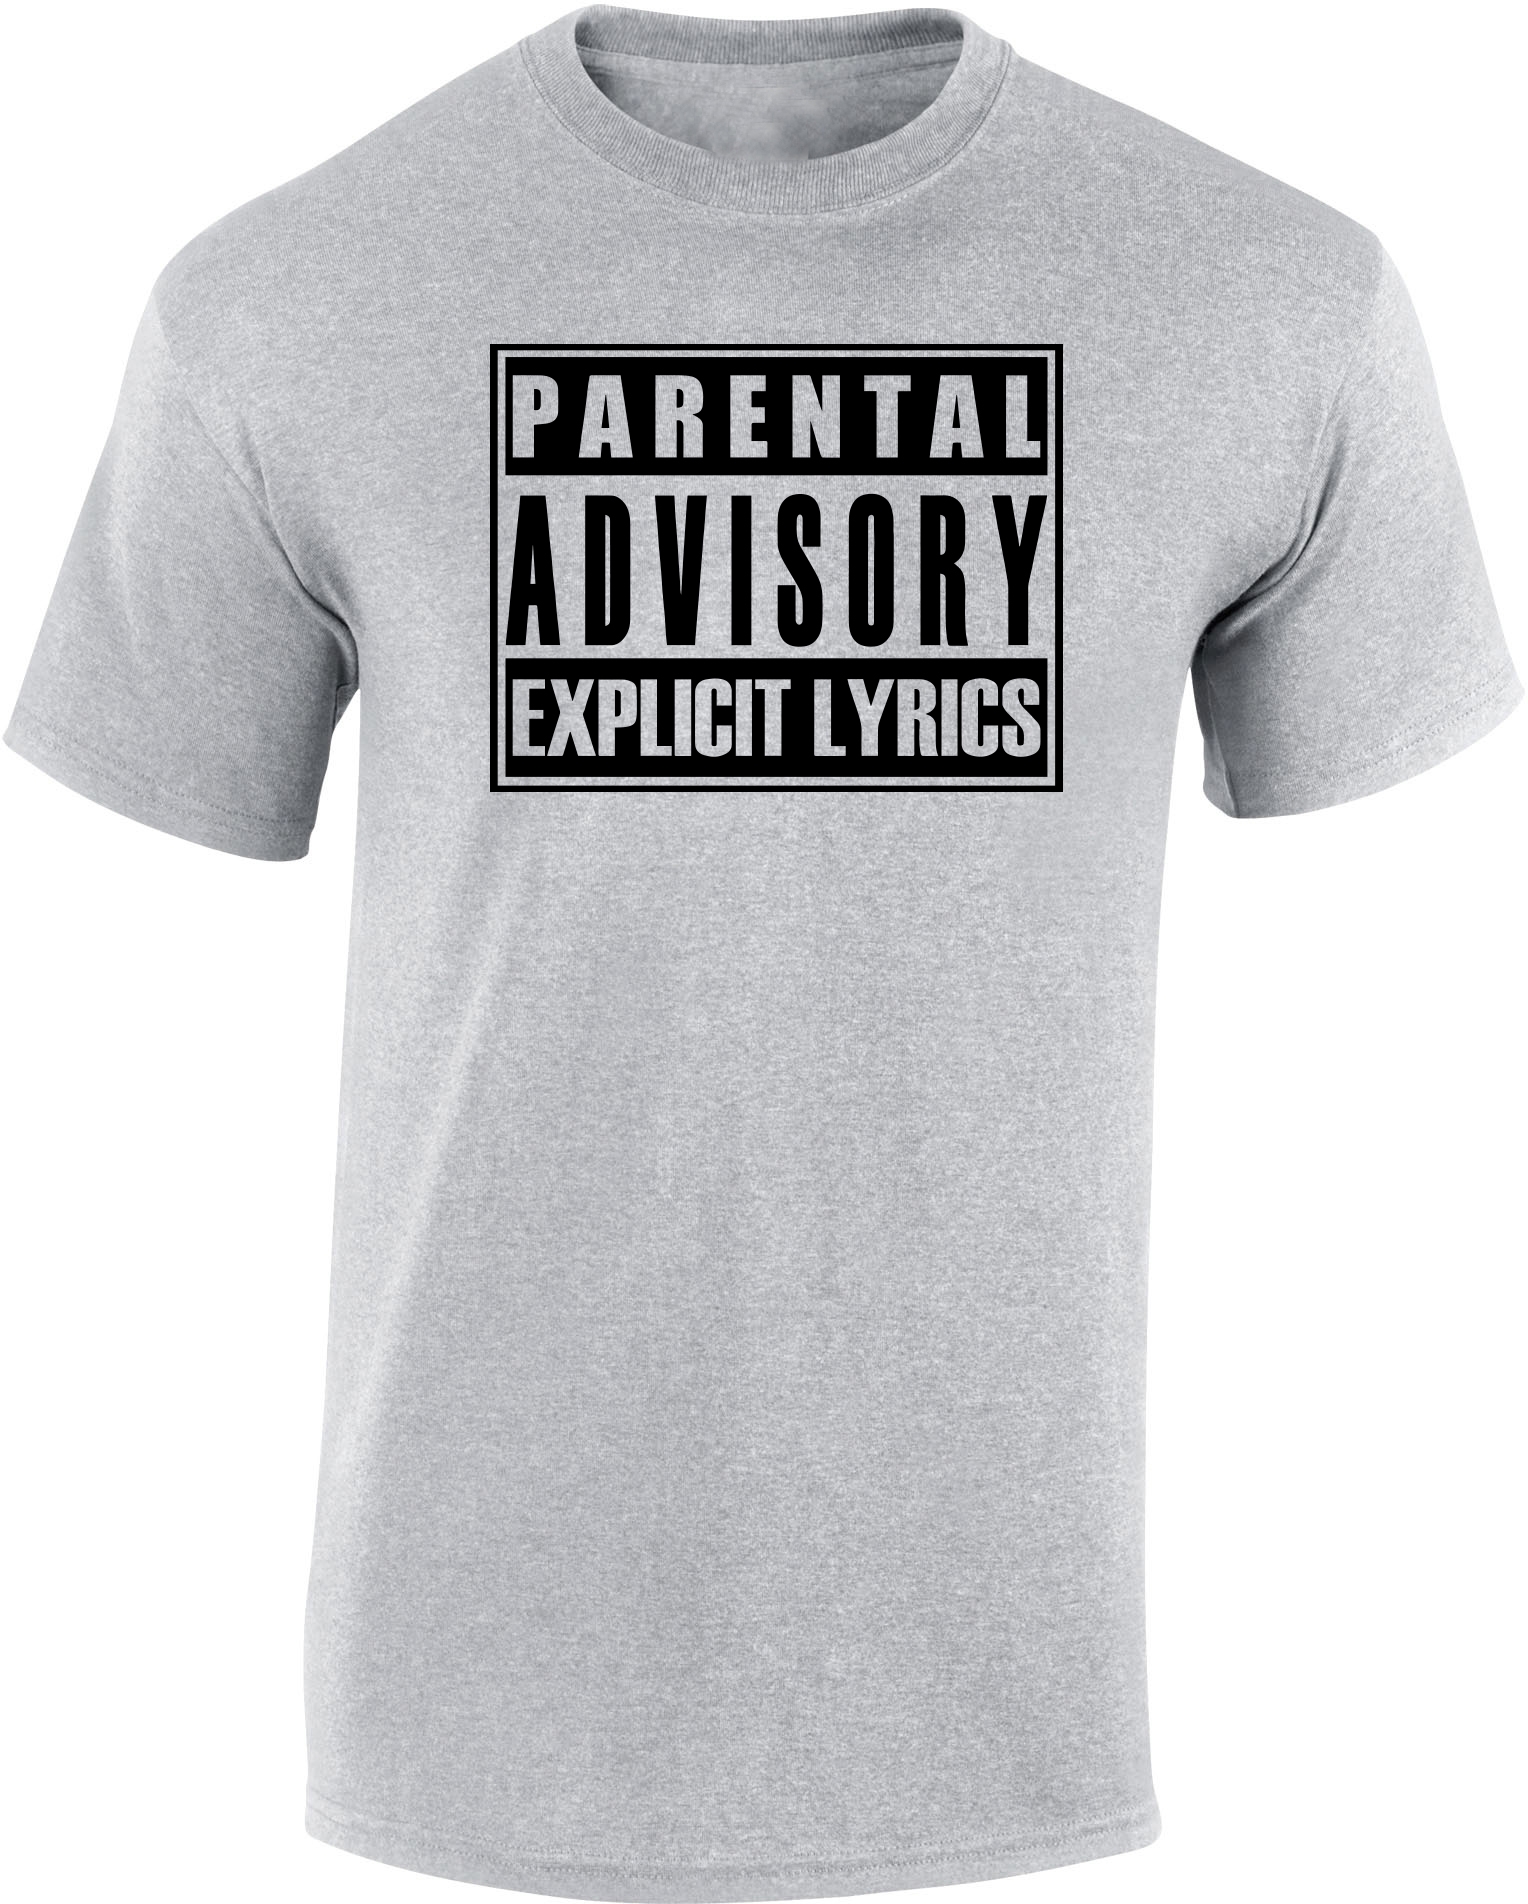 Tee-shirt gris Parental Advisory de hip hop sur Scredboutique.com